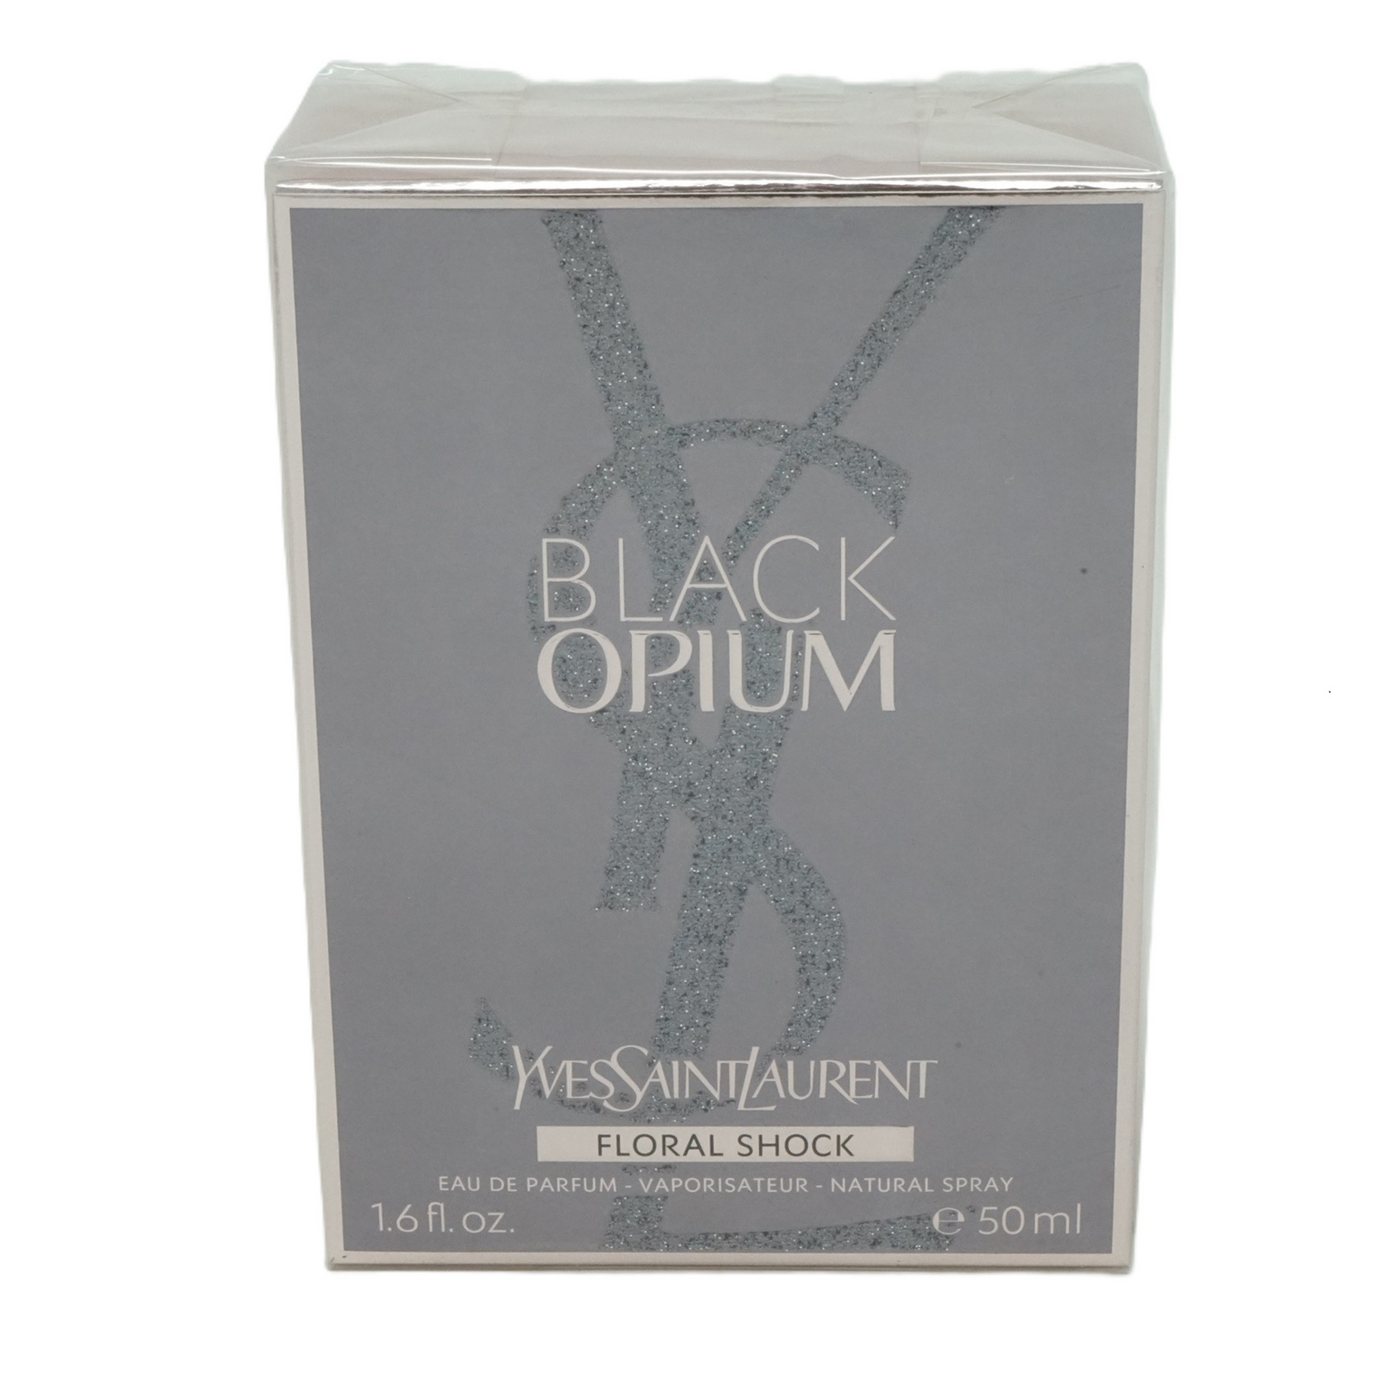 YVES SAINT LAURENT Eau de Parfum Yves Saint Laurent Black Opium Floral Shock Eau de Parfum Spray 50 ml von YVES SAINT LAURENT